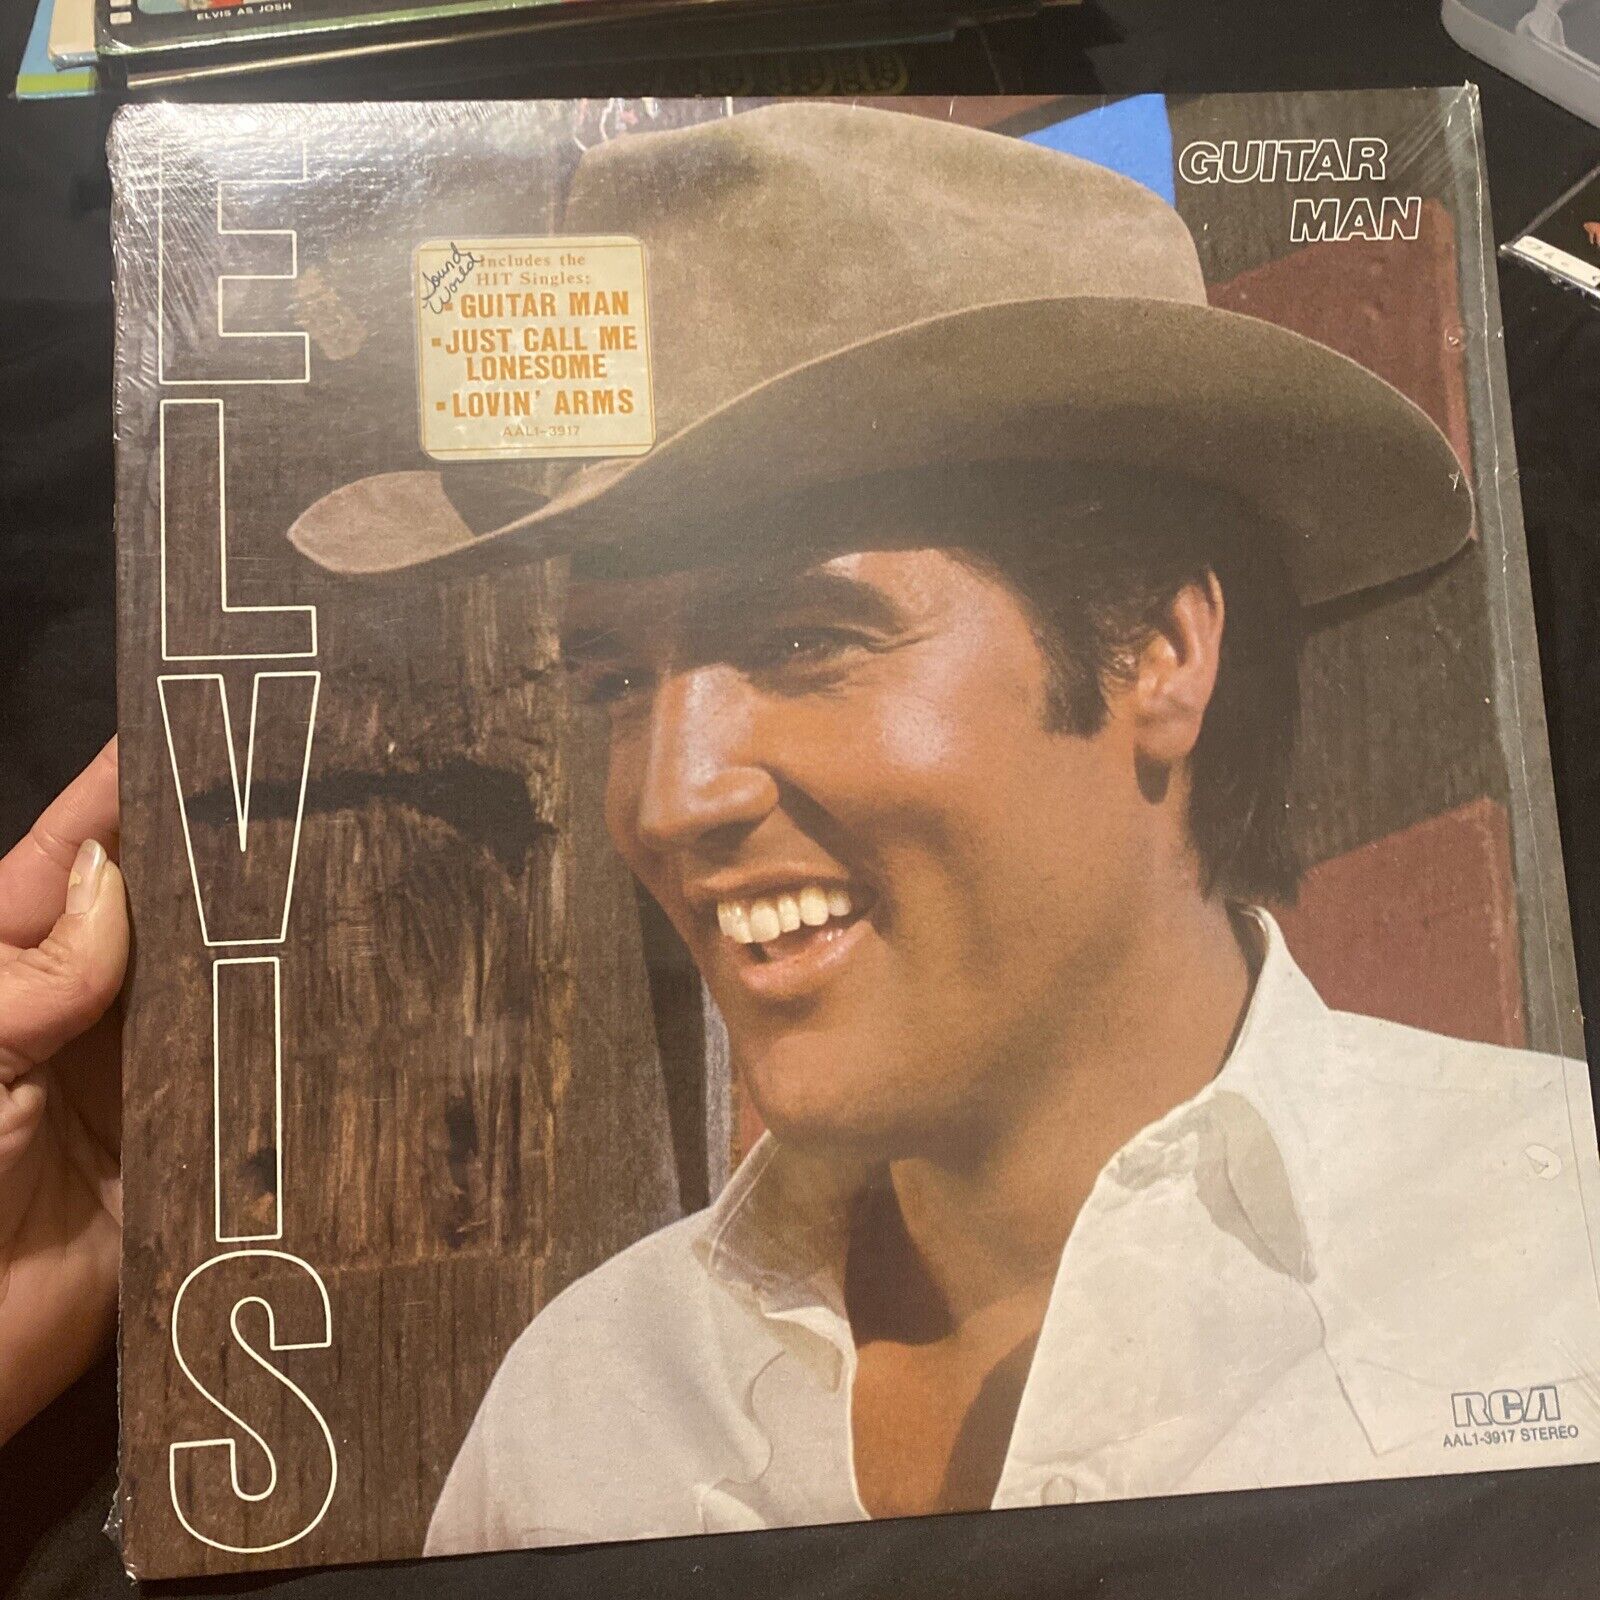 Vintage Sealed Vinyl NOS Record Album Elvis Presley Guitar Man